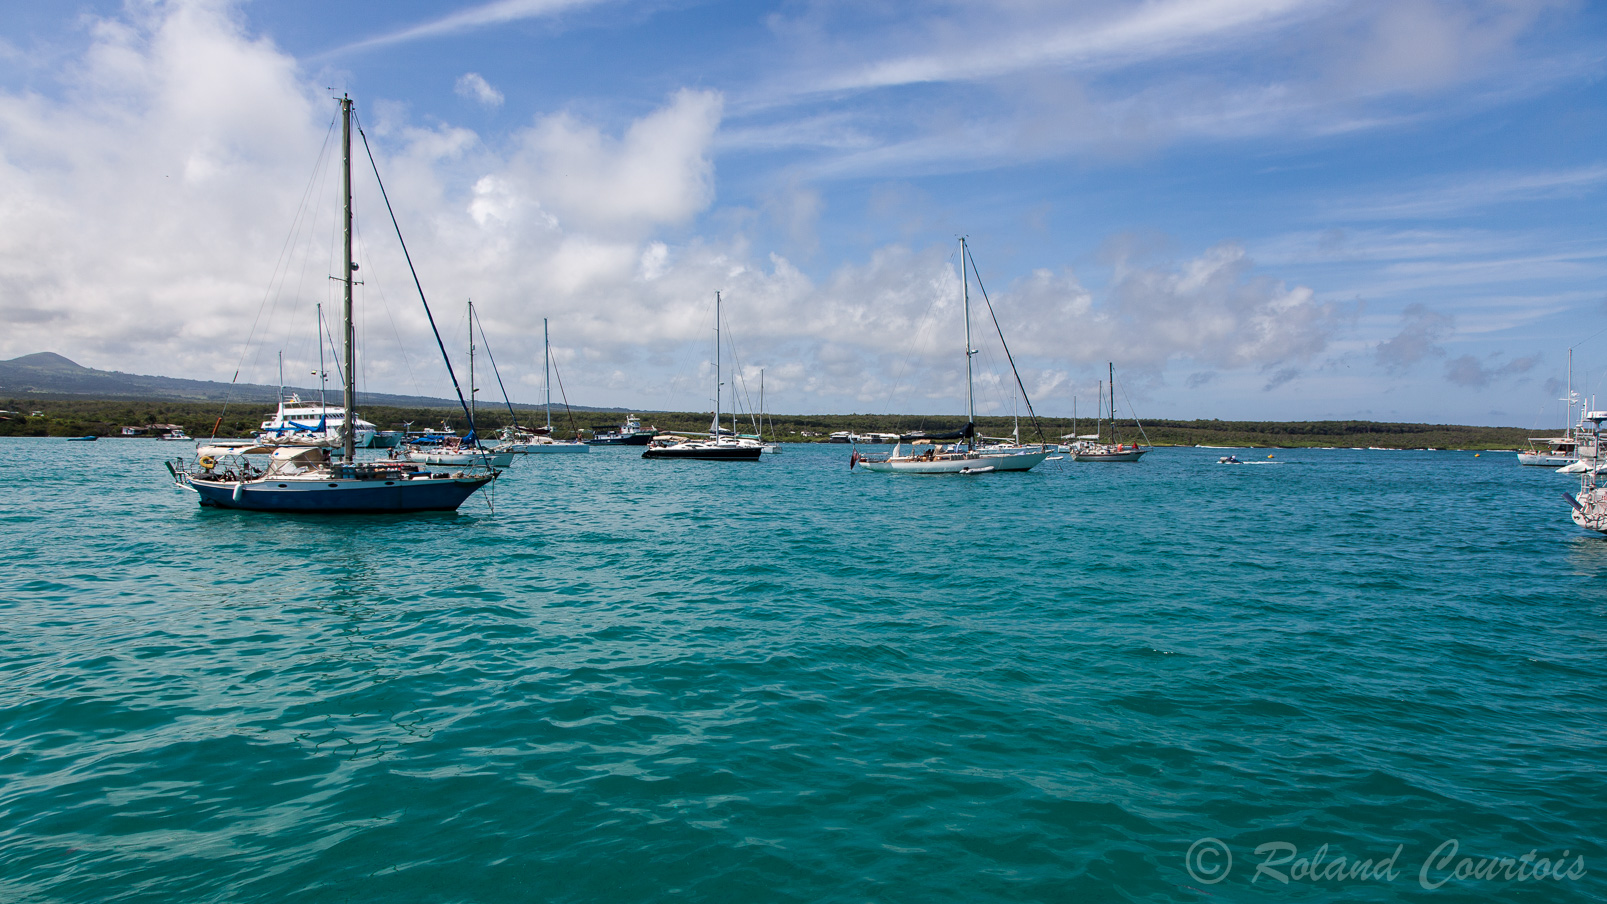 Dans la baie de Puerto Ayora, ville principale de l'ile Sanrta Cruz,  flotille de bateaux attendant le touriste.